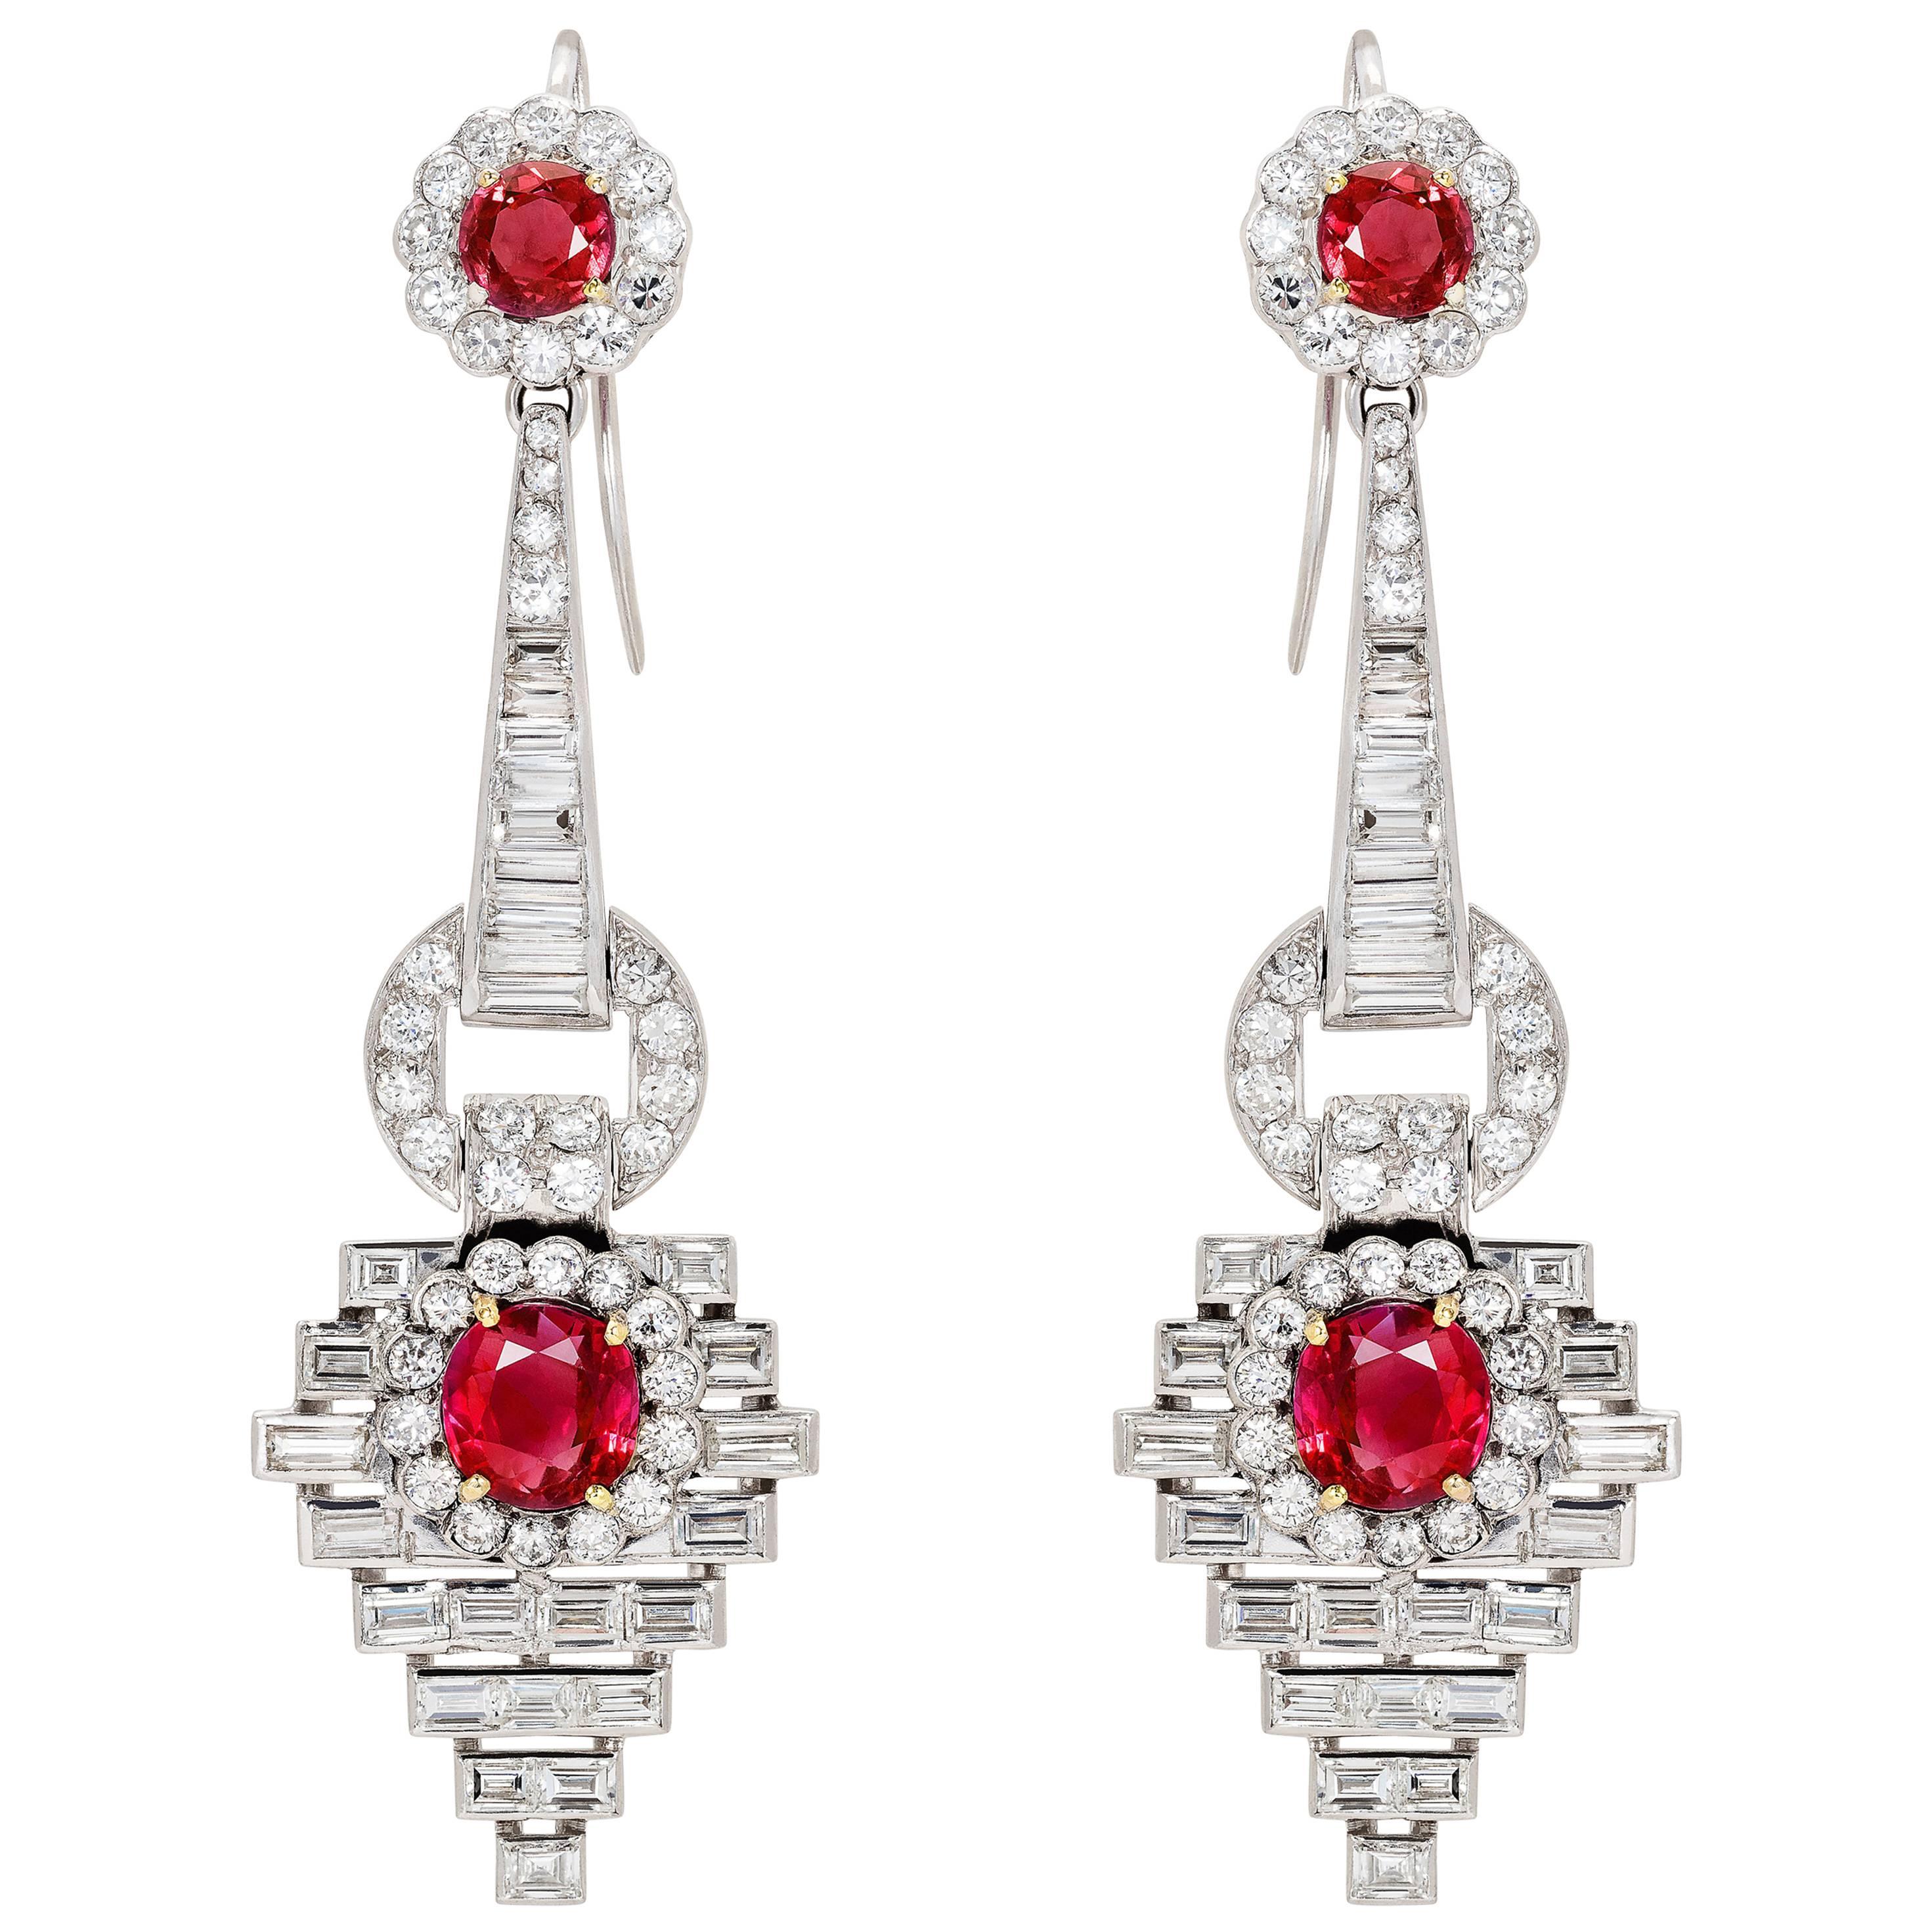 Pair of Burmese Ruby and Diamond Earrings